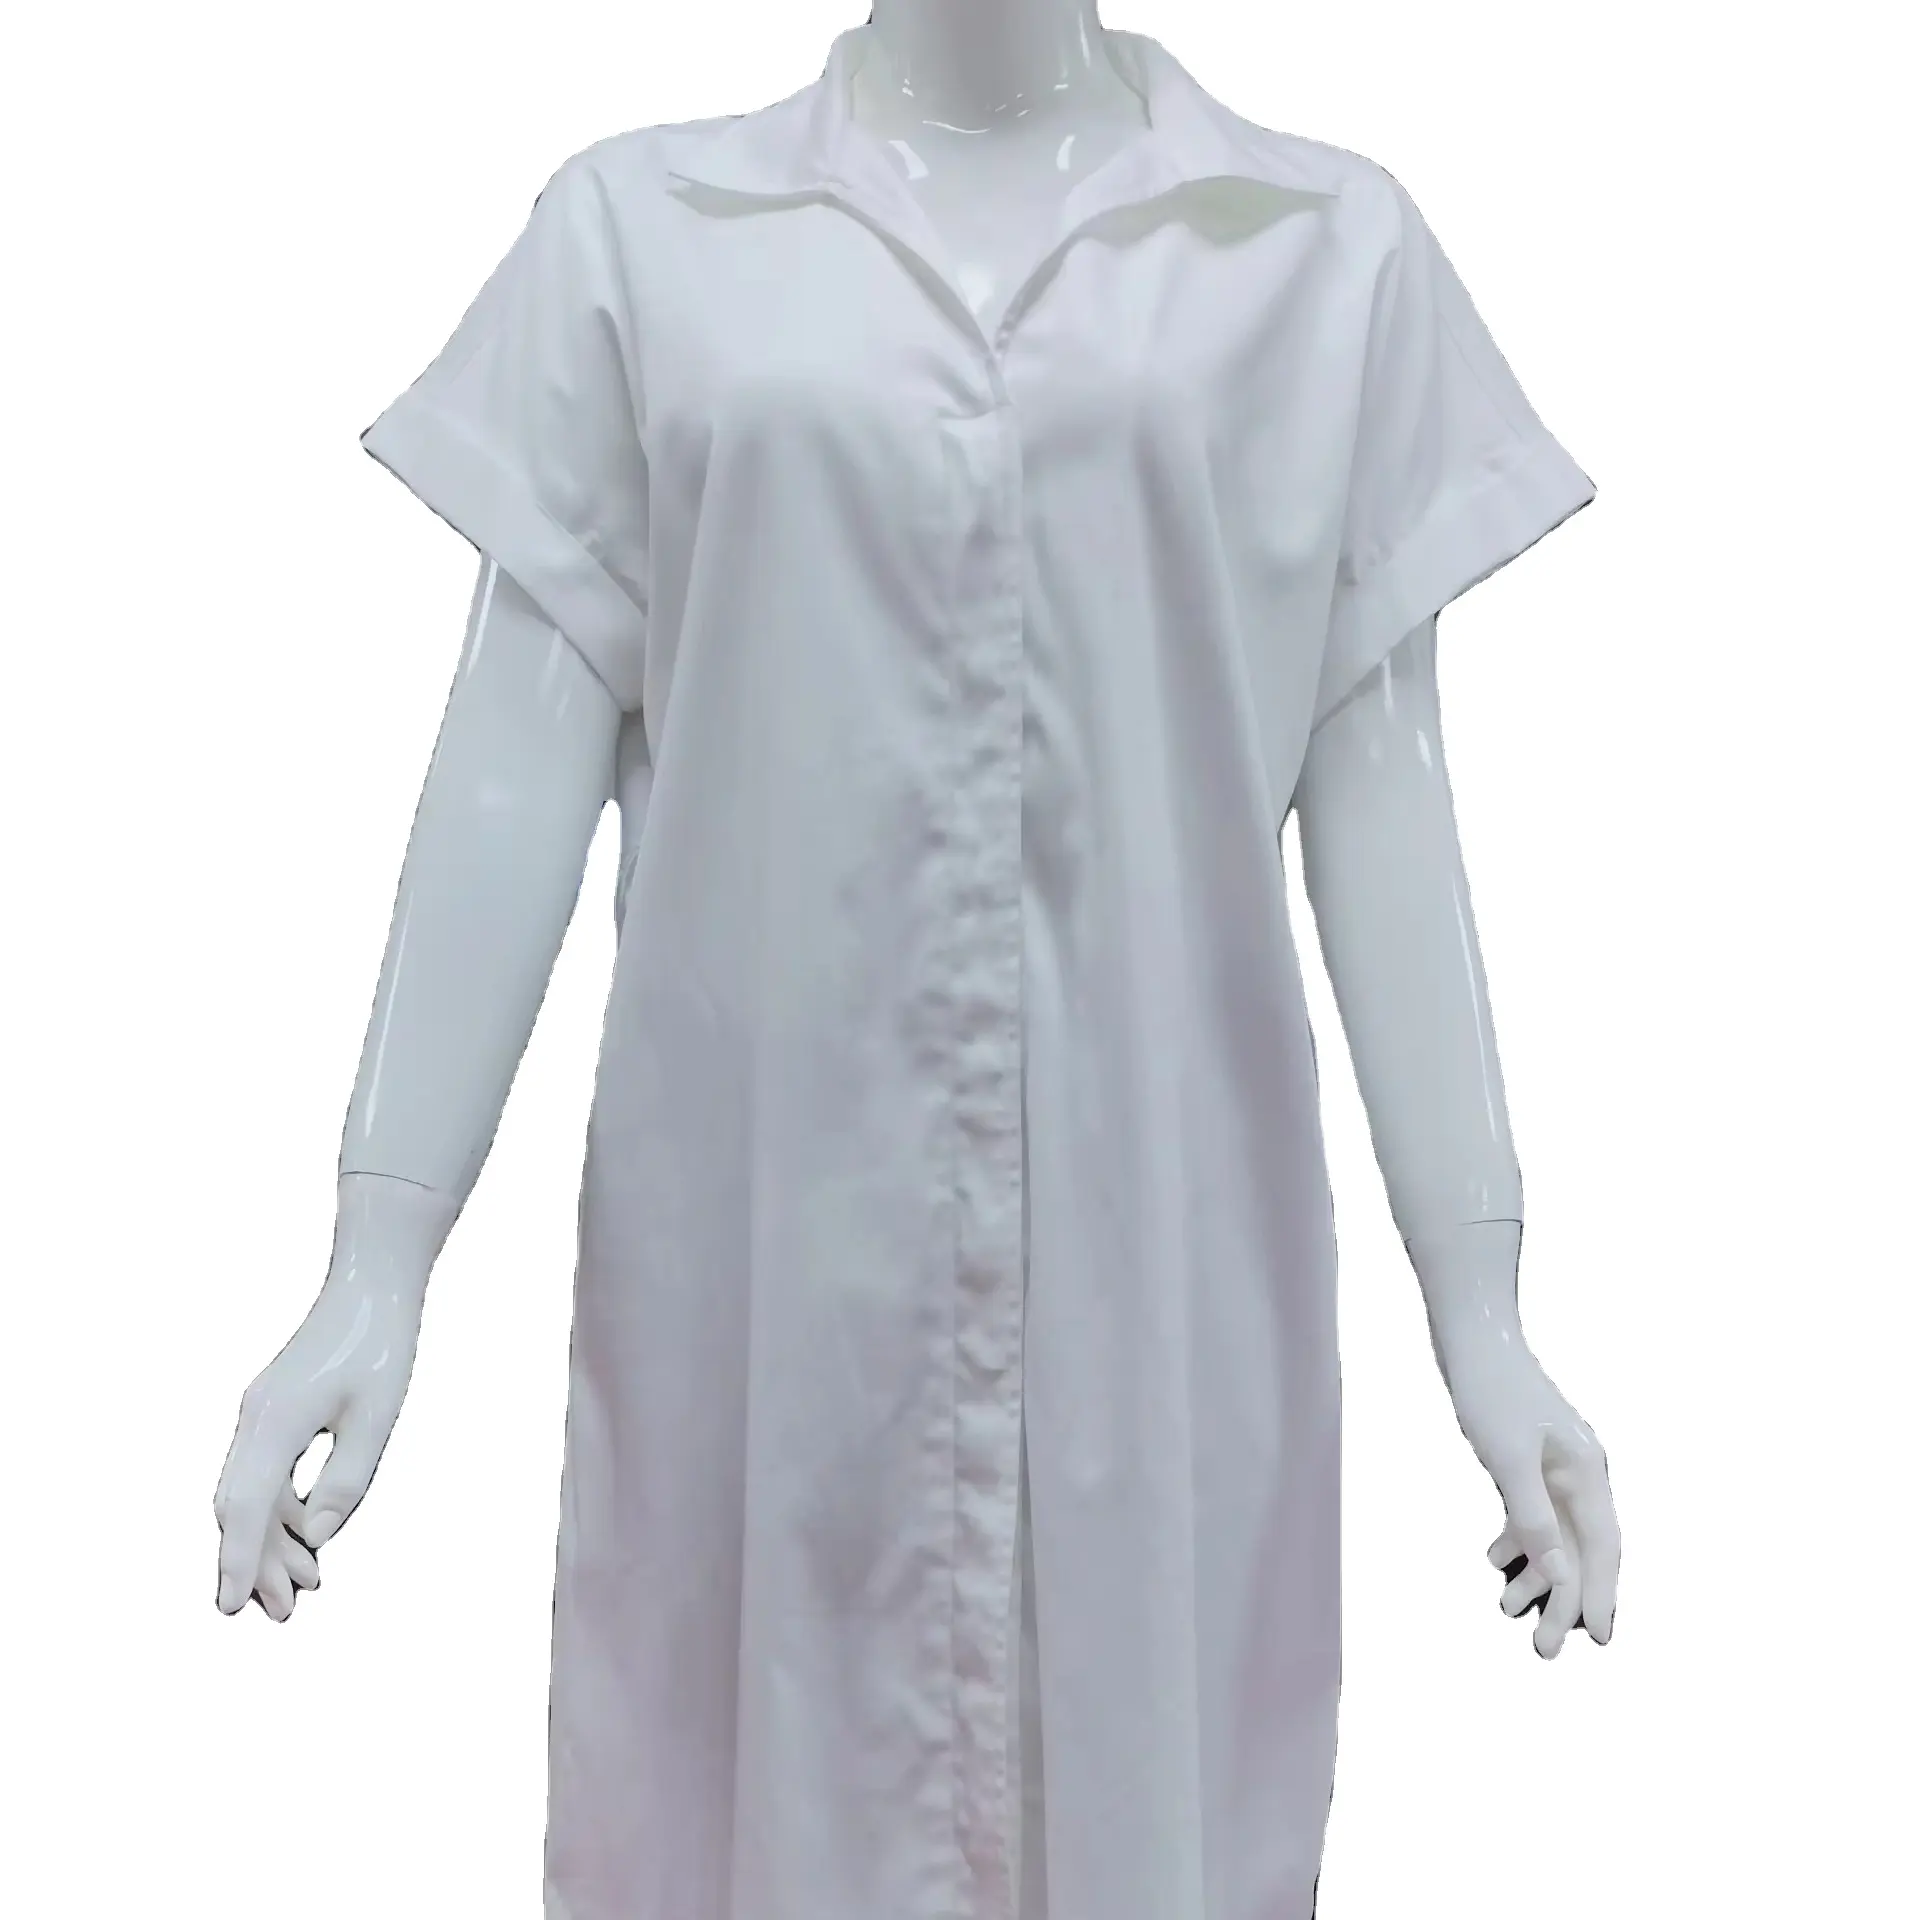 Kemeja dasar kerah Turn down gaun berkualitas gaya kasual Top Gaun wanita warna putih dengan harga grosir